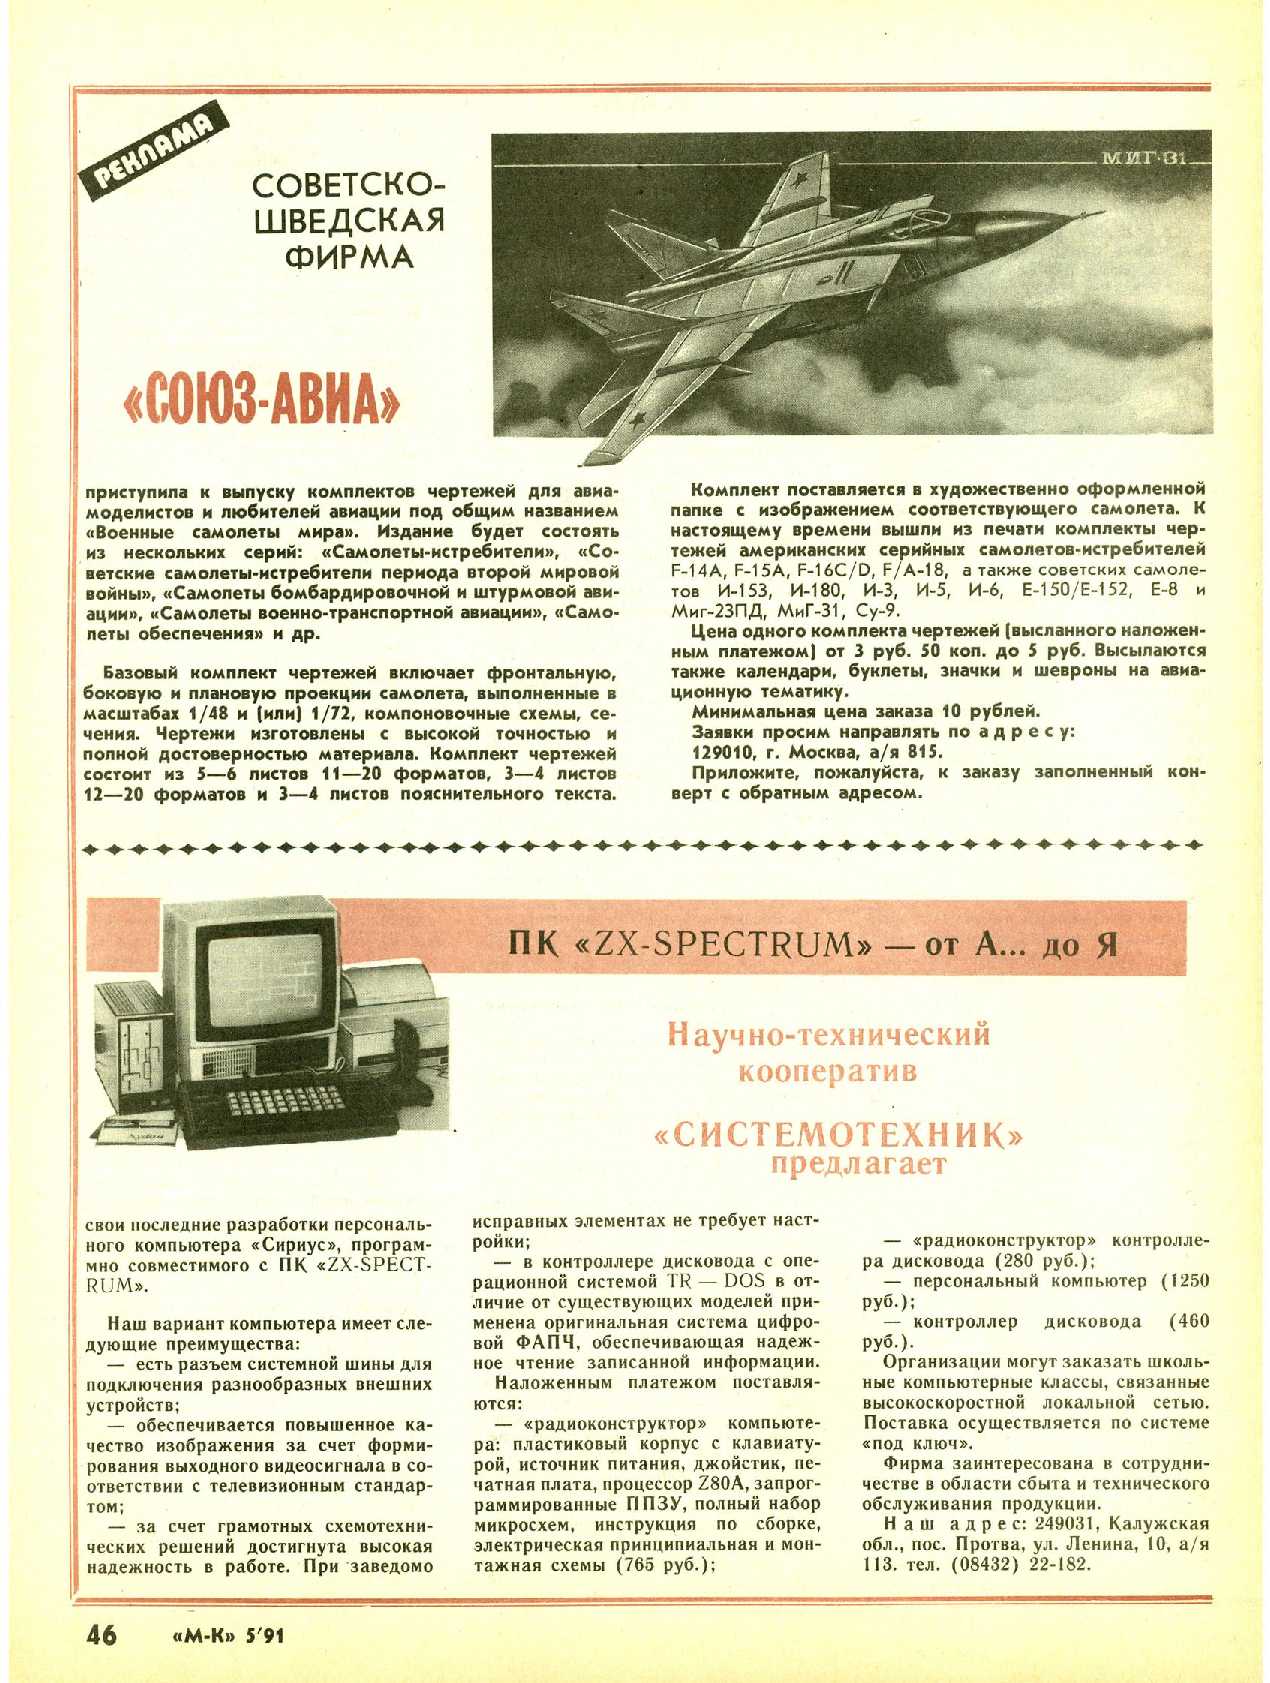 МК 5, 1991, 46 c.